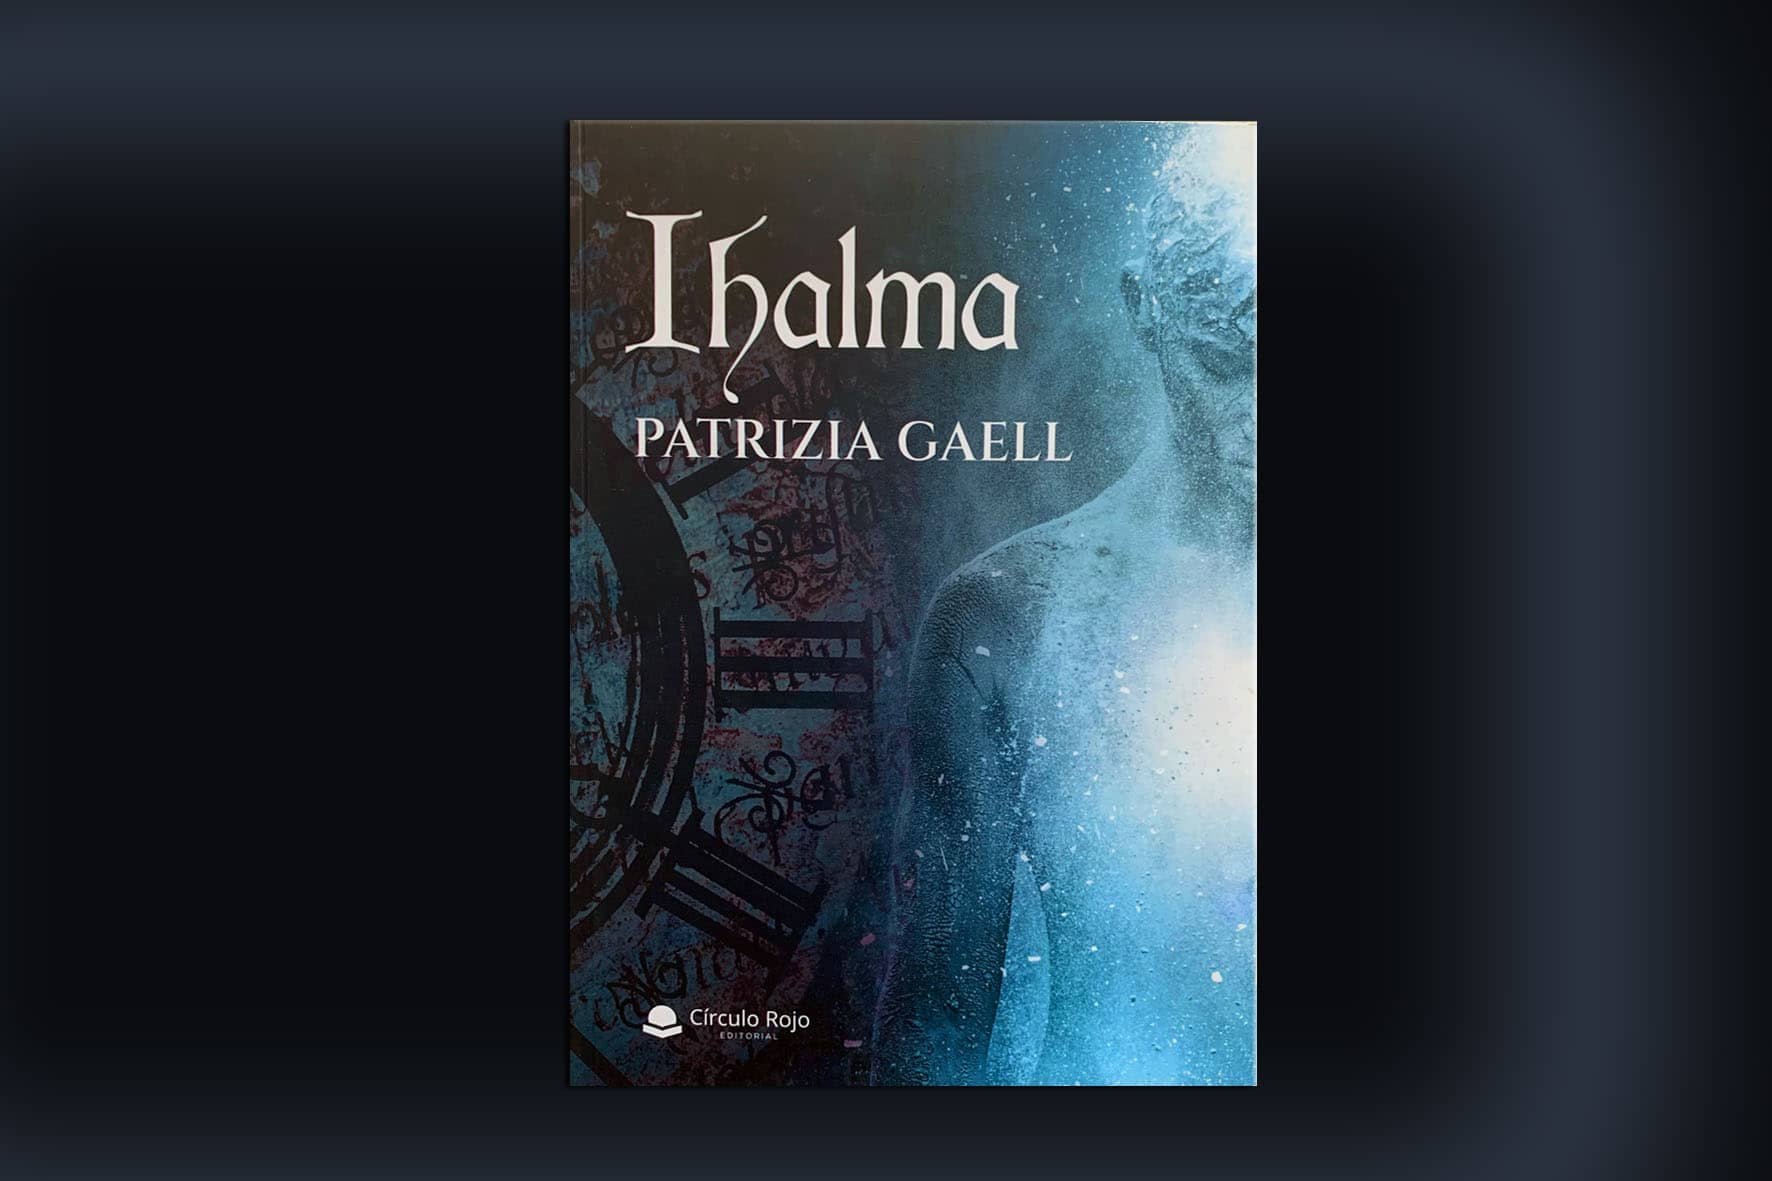 Patrizia Gaell, fascinante escritora, nos muestra su nueva obra “Ihalma”